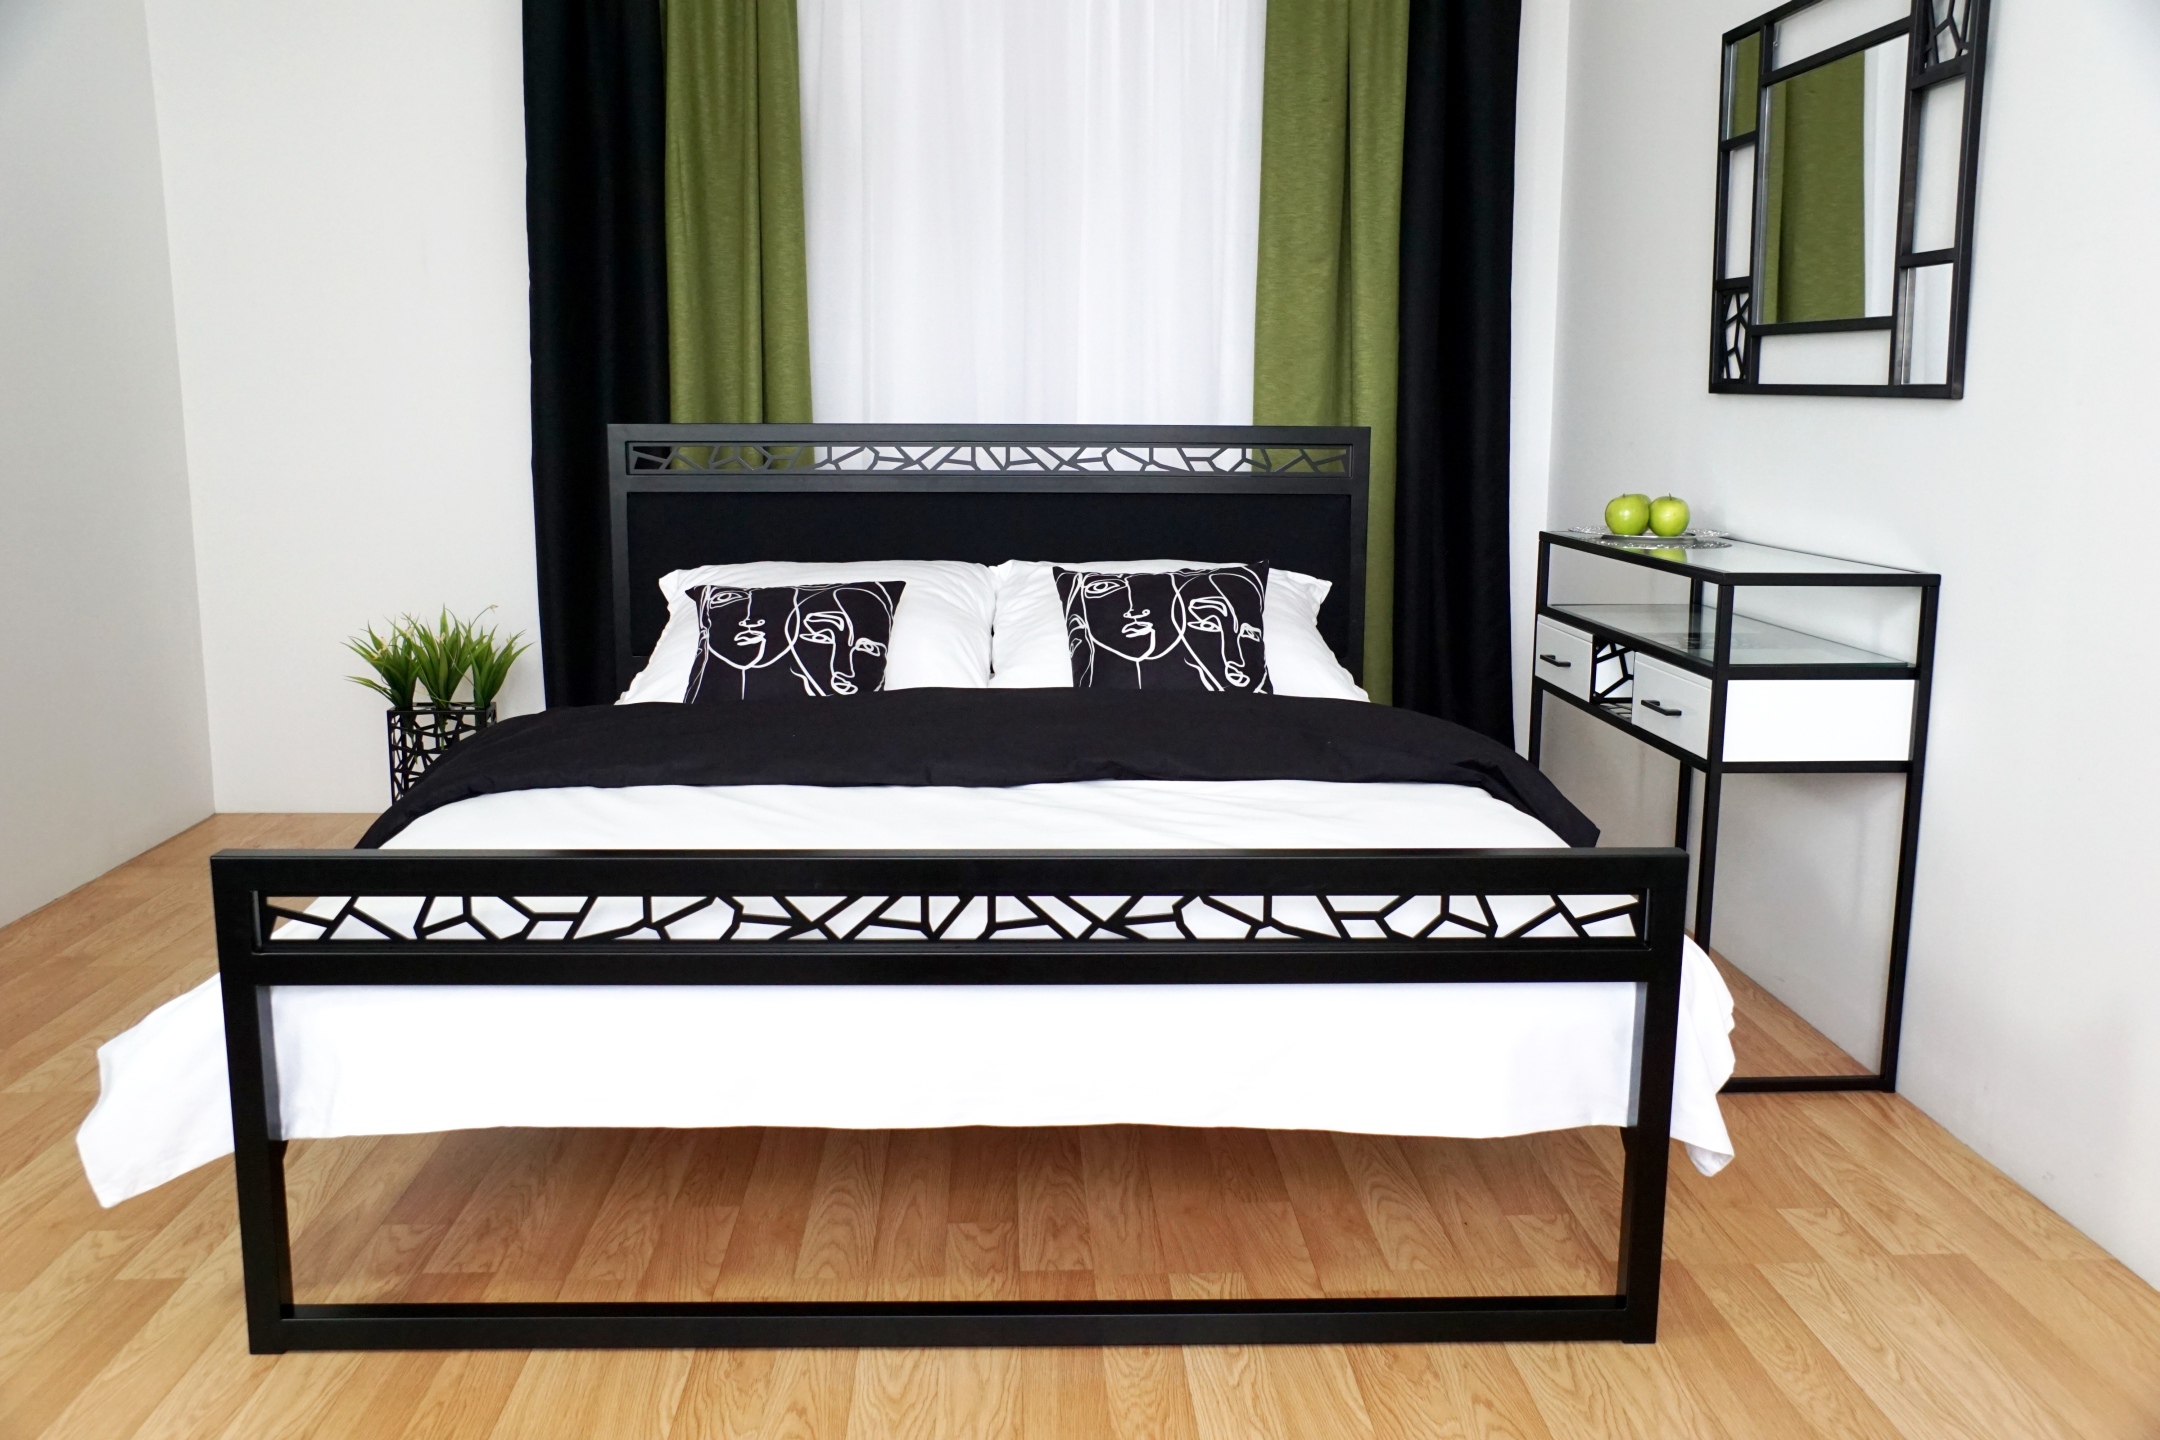 Łóżko loft, czyli modne i nowoczesne rozwiązanie do twojej sypialni